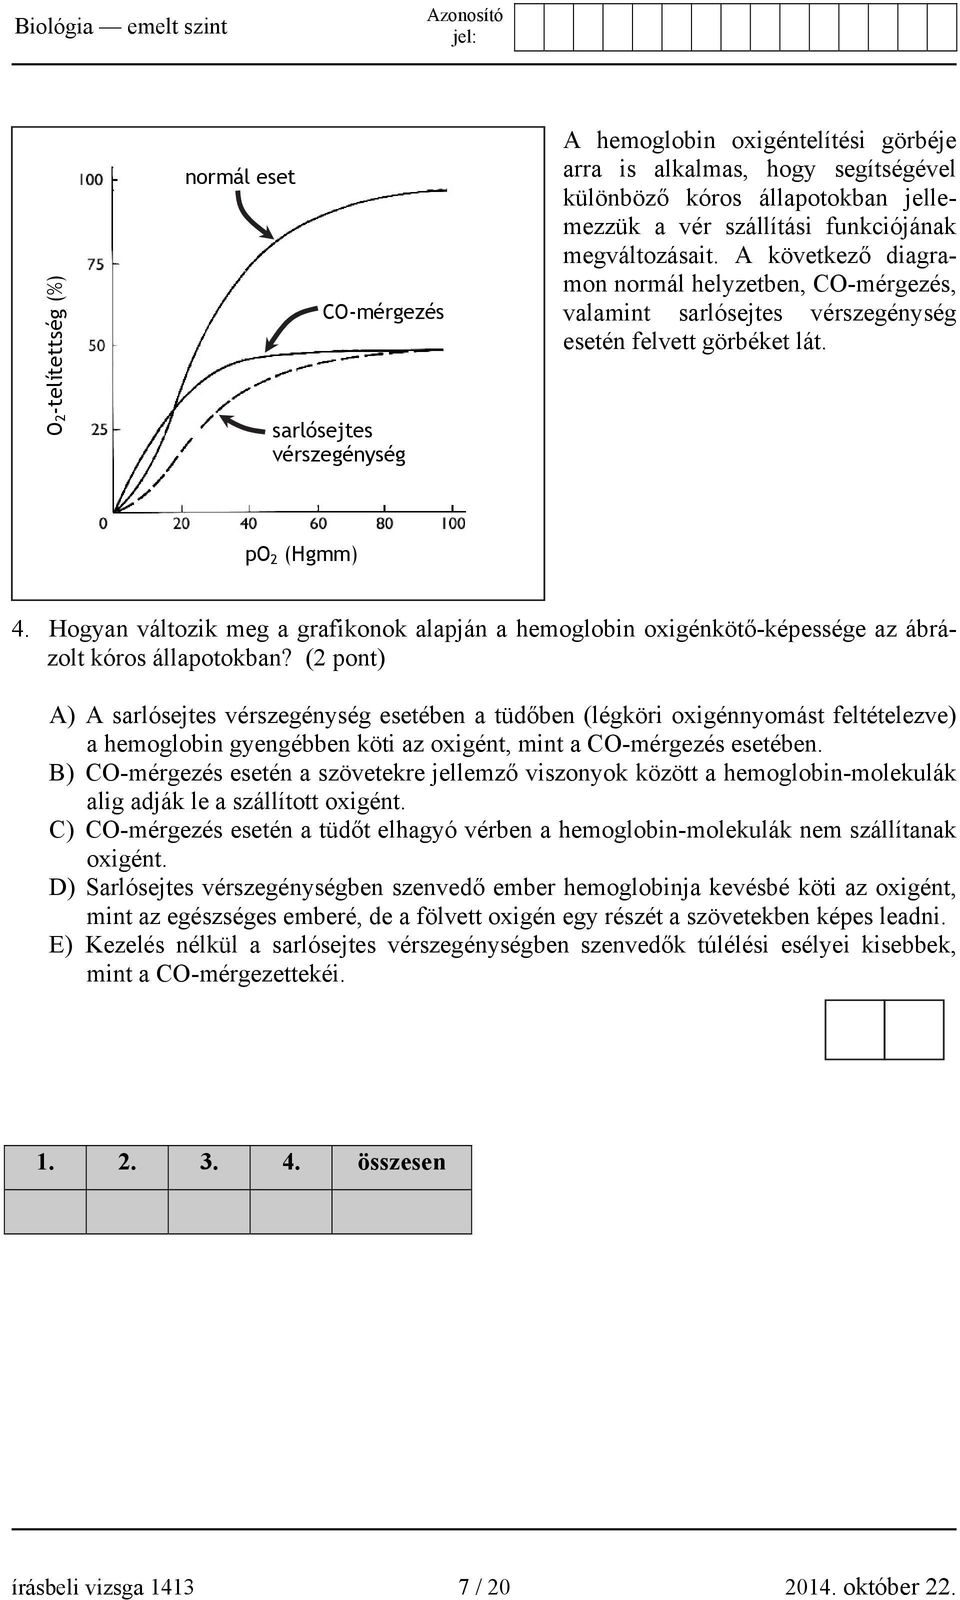 Hogyan változik meg a grafikonok alapján a hemoglobin oxigénkötő-képessége az ábrázolt kóros állapotokban?